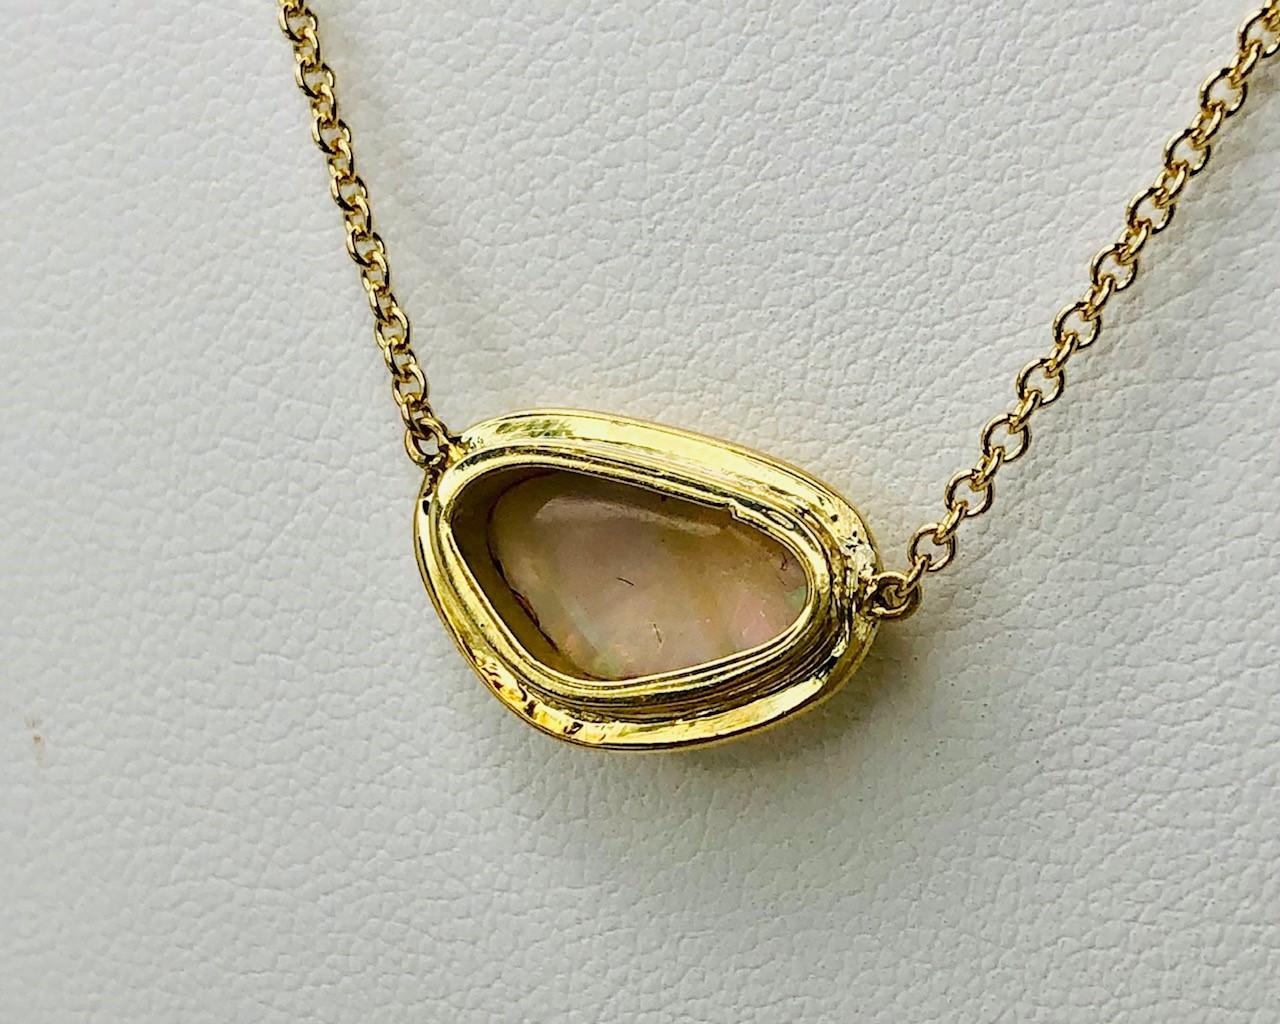 Bezel Set Freeform Australian Opal Necklace in 18k Yellow Gold   3